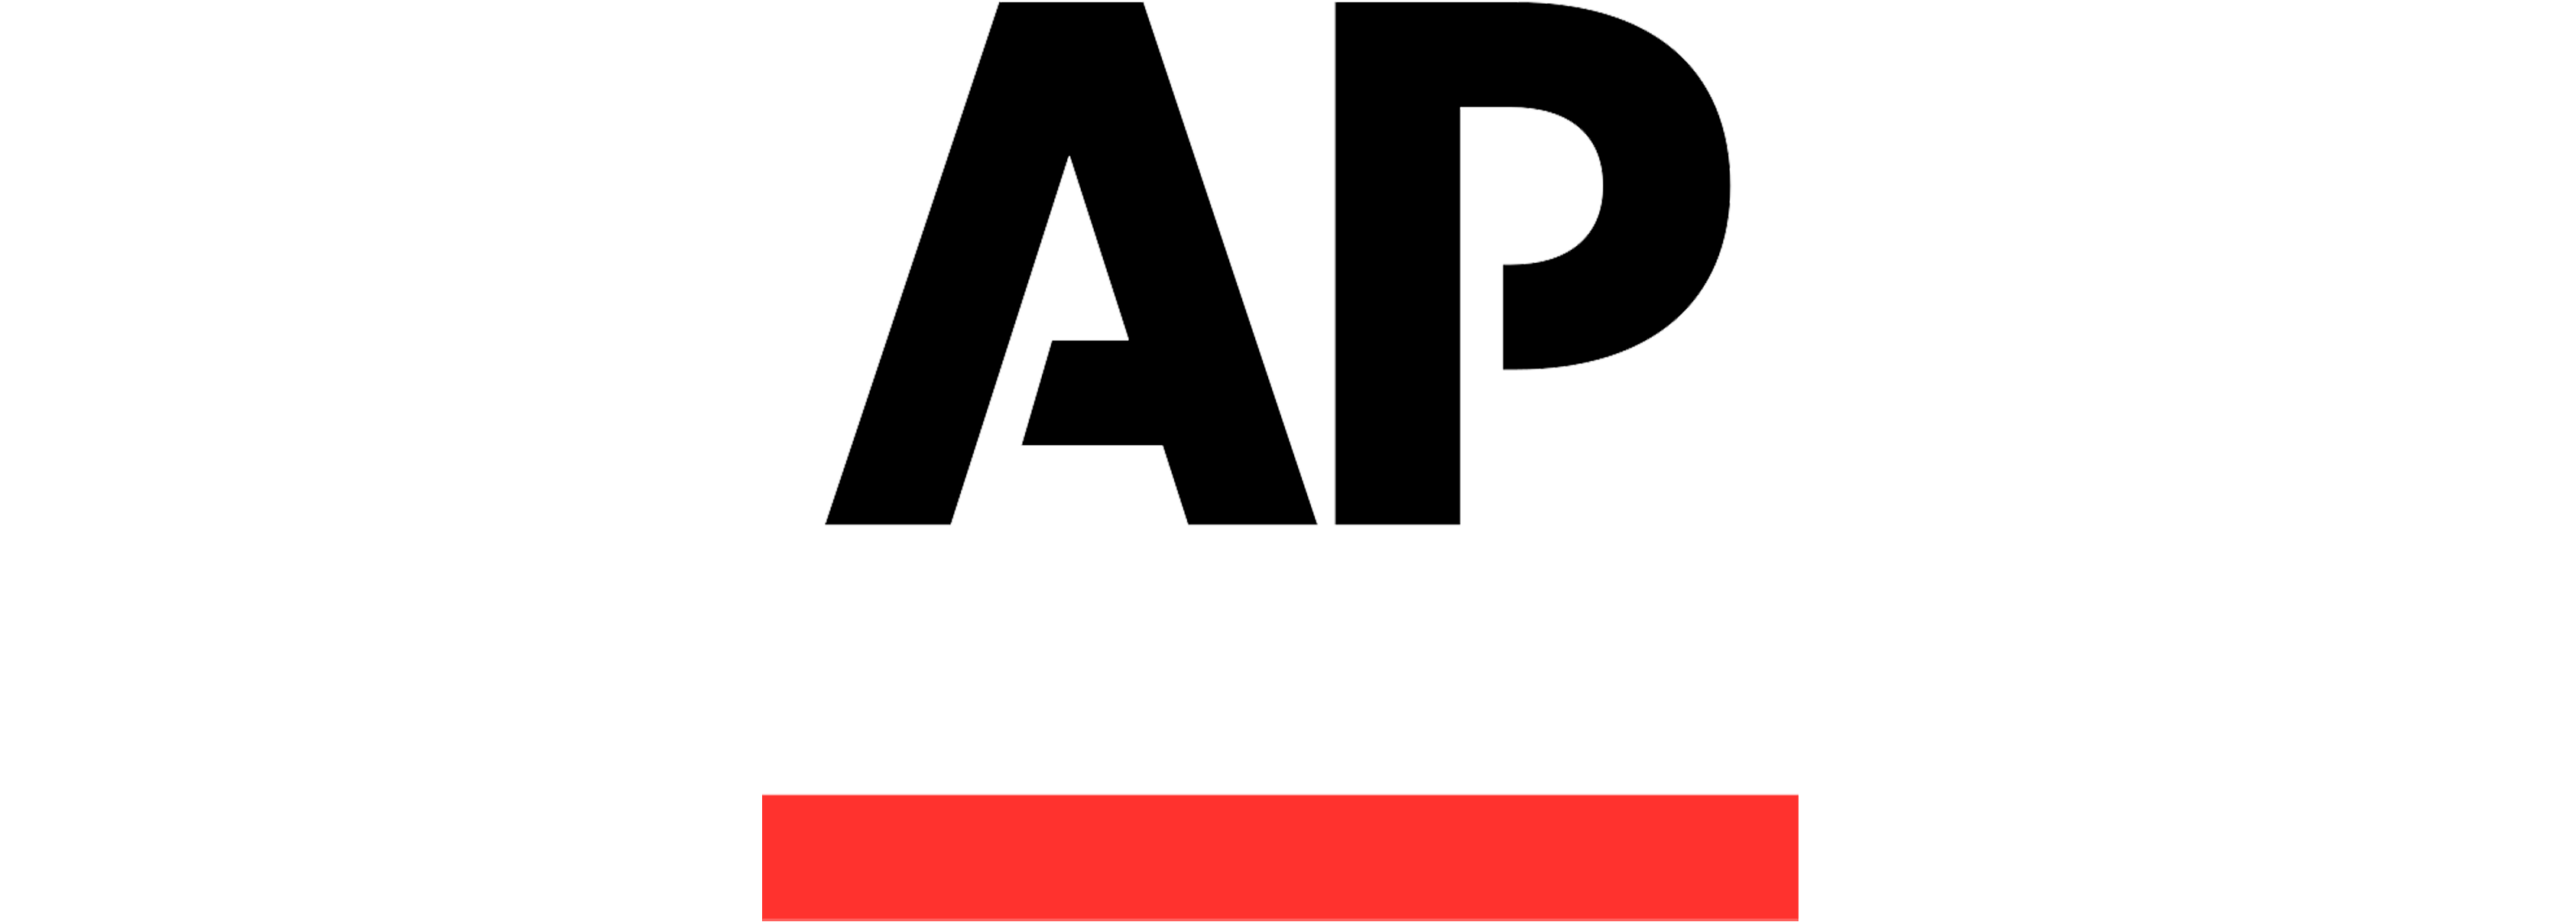 ASSOCIATEDPRESS-logo.png